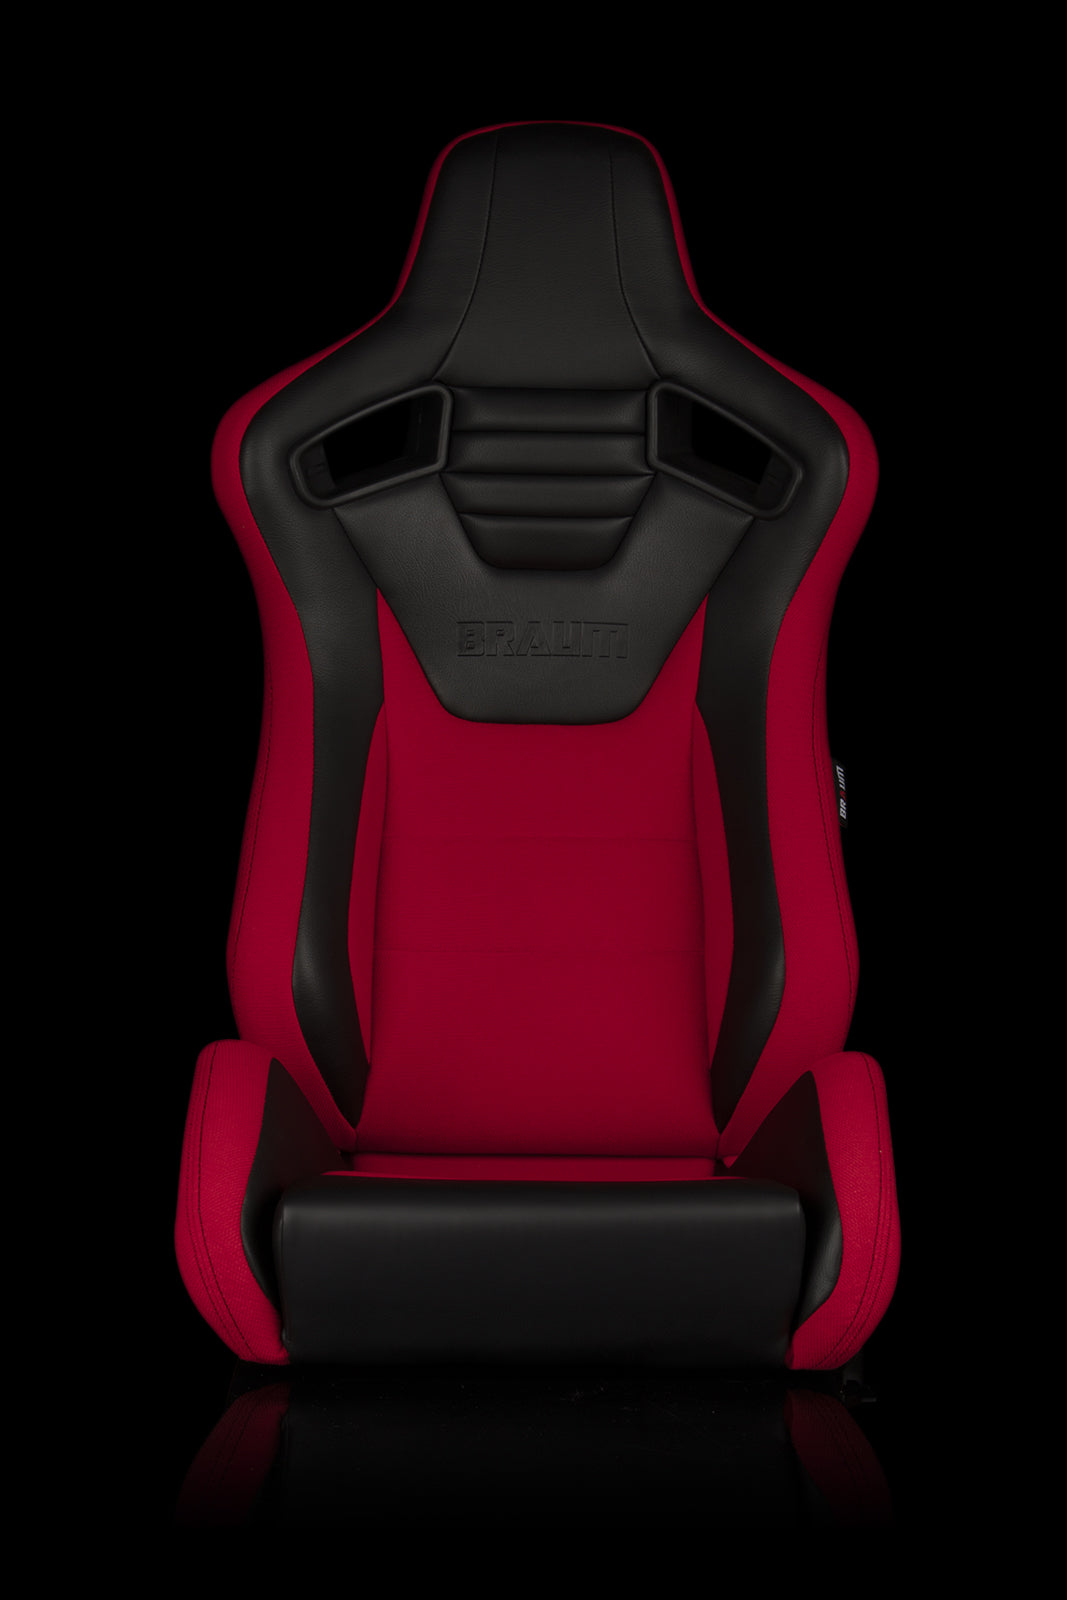 Braum Racing Elite-S Series Reclining Racing Seats (5 Colors) â€“ PAIR